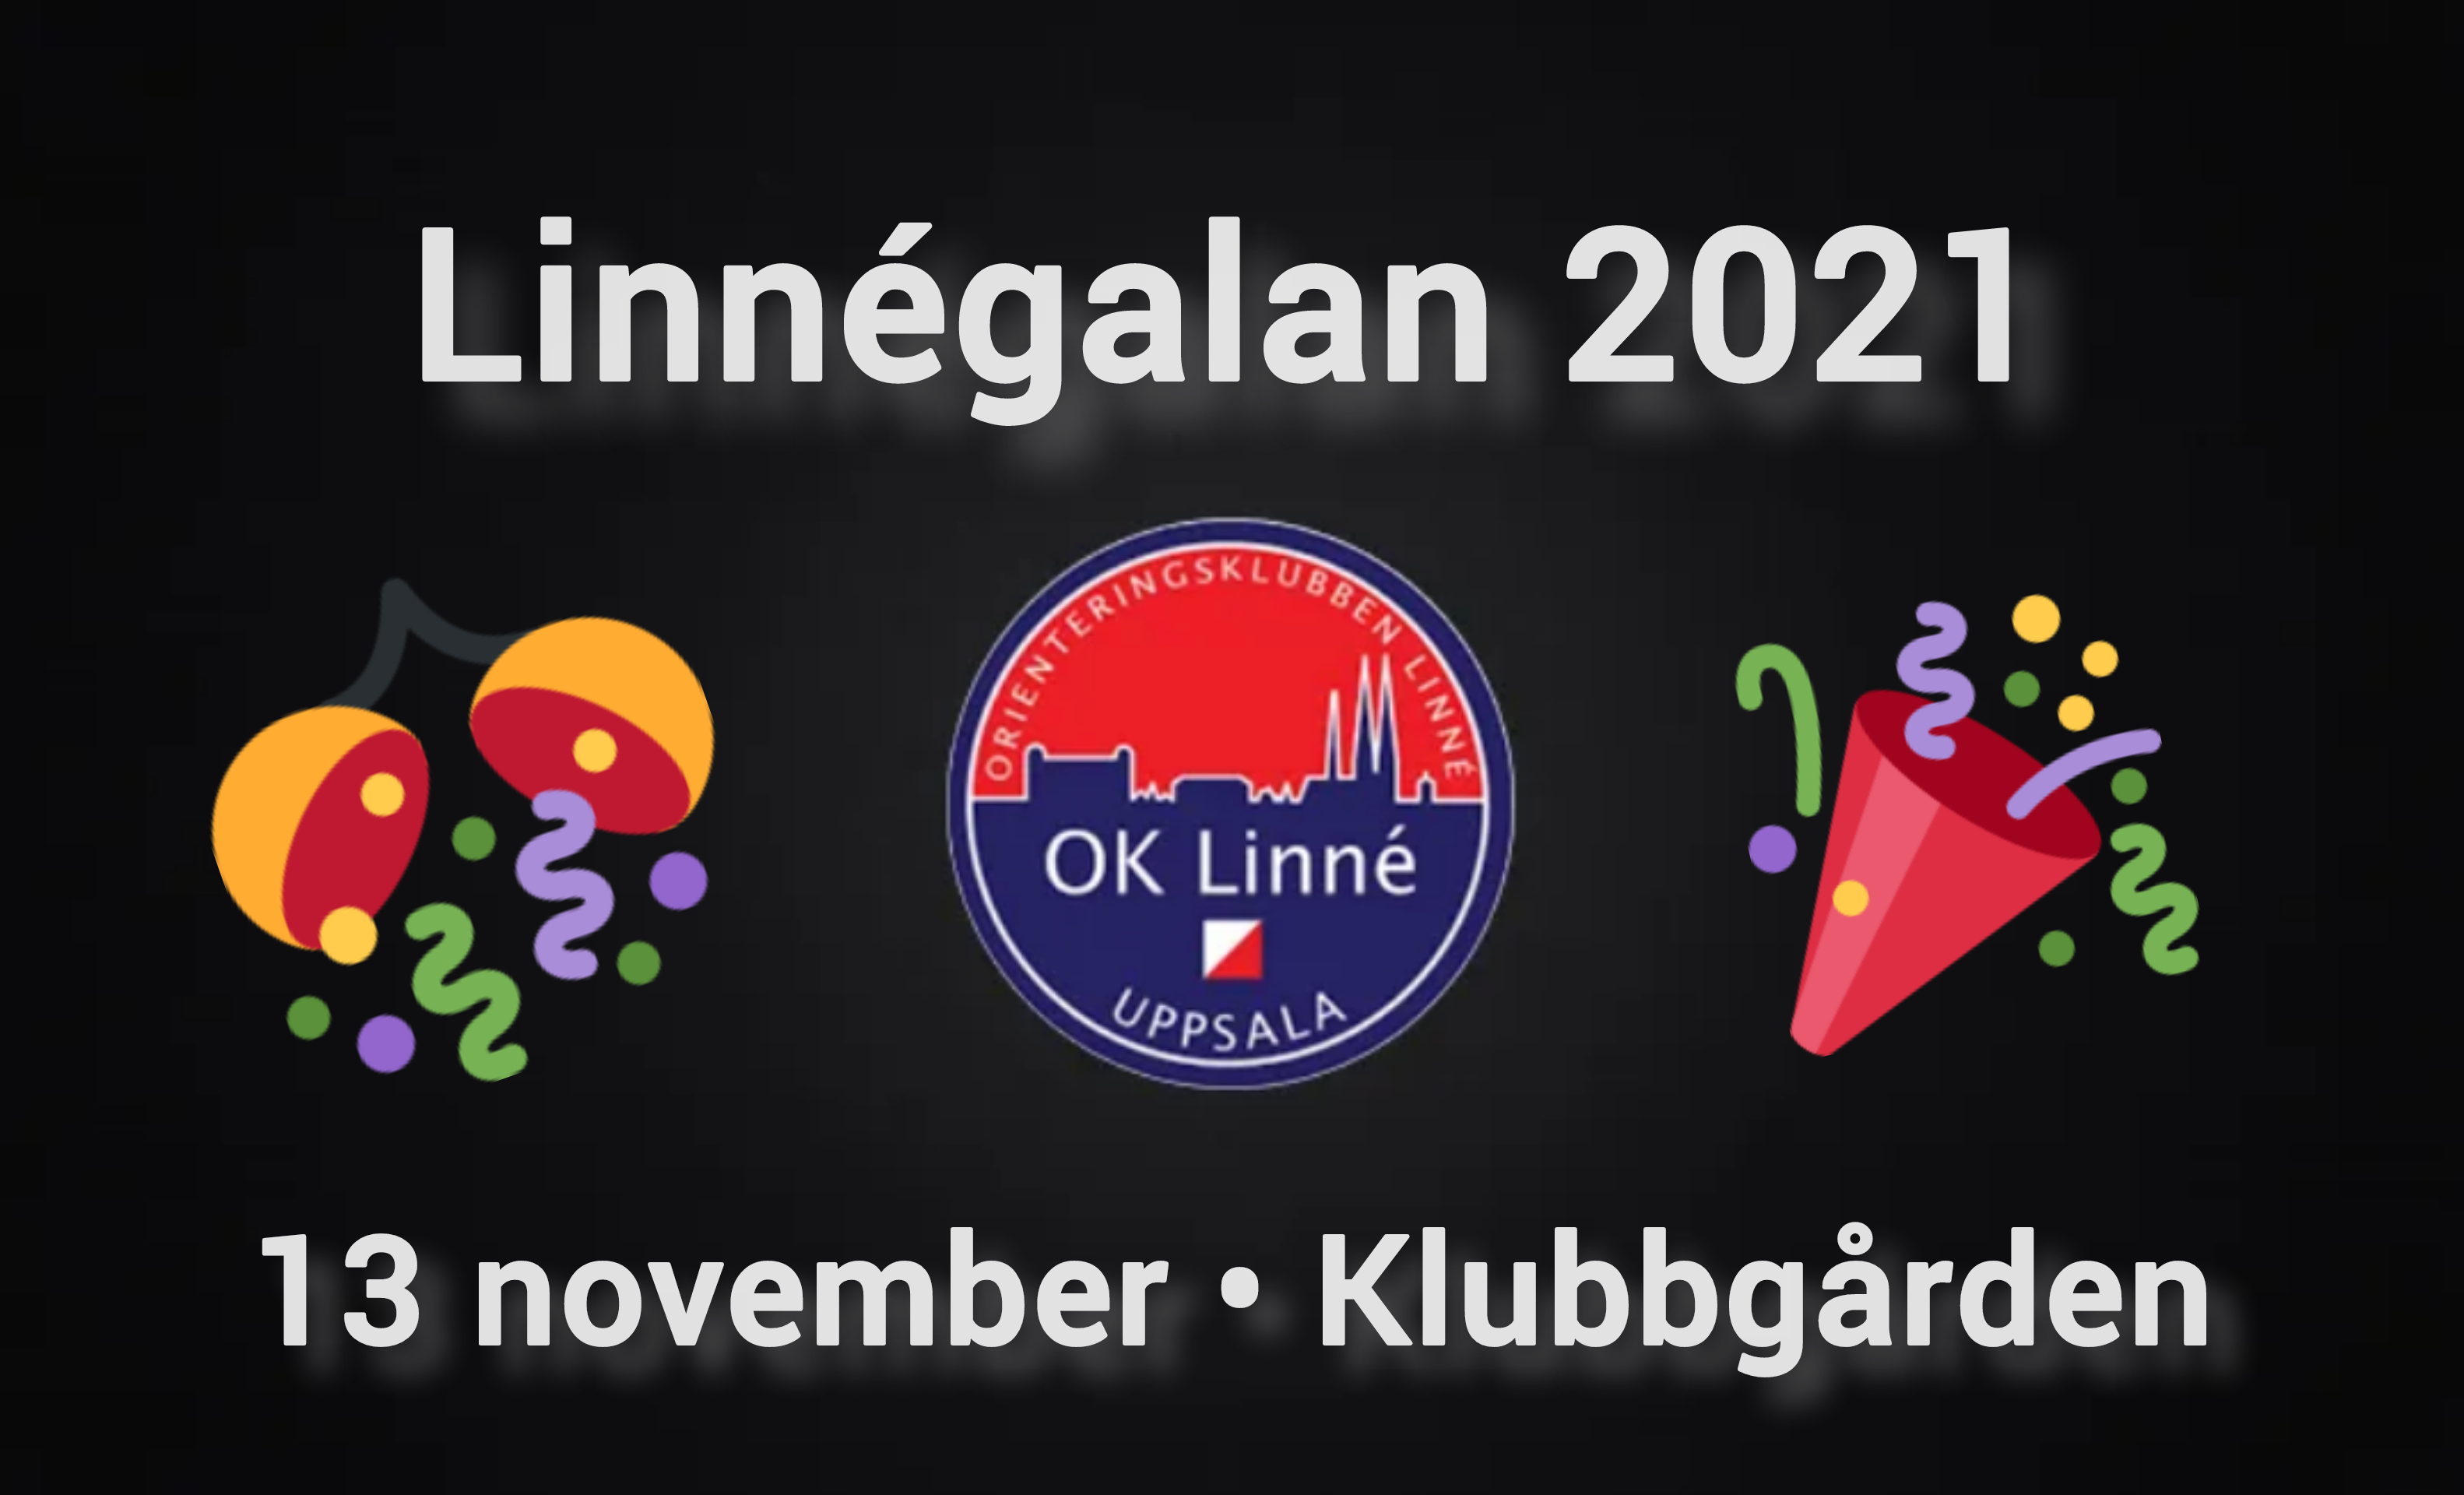 Linnégalan 2021 väntar på dig, kära Linnéare.